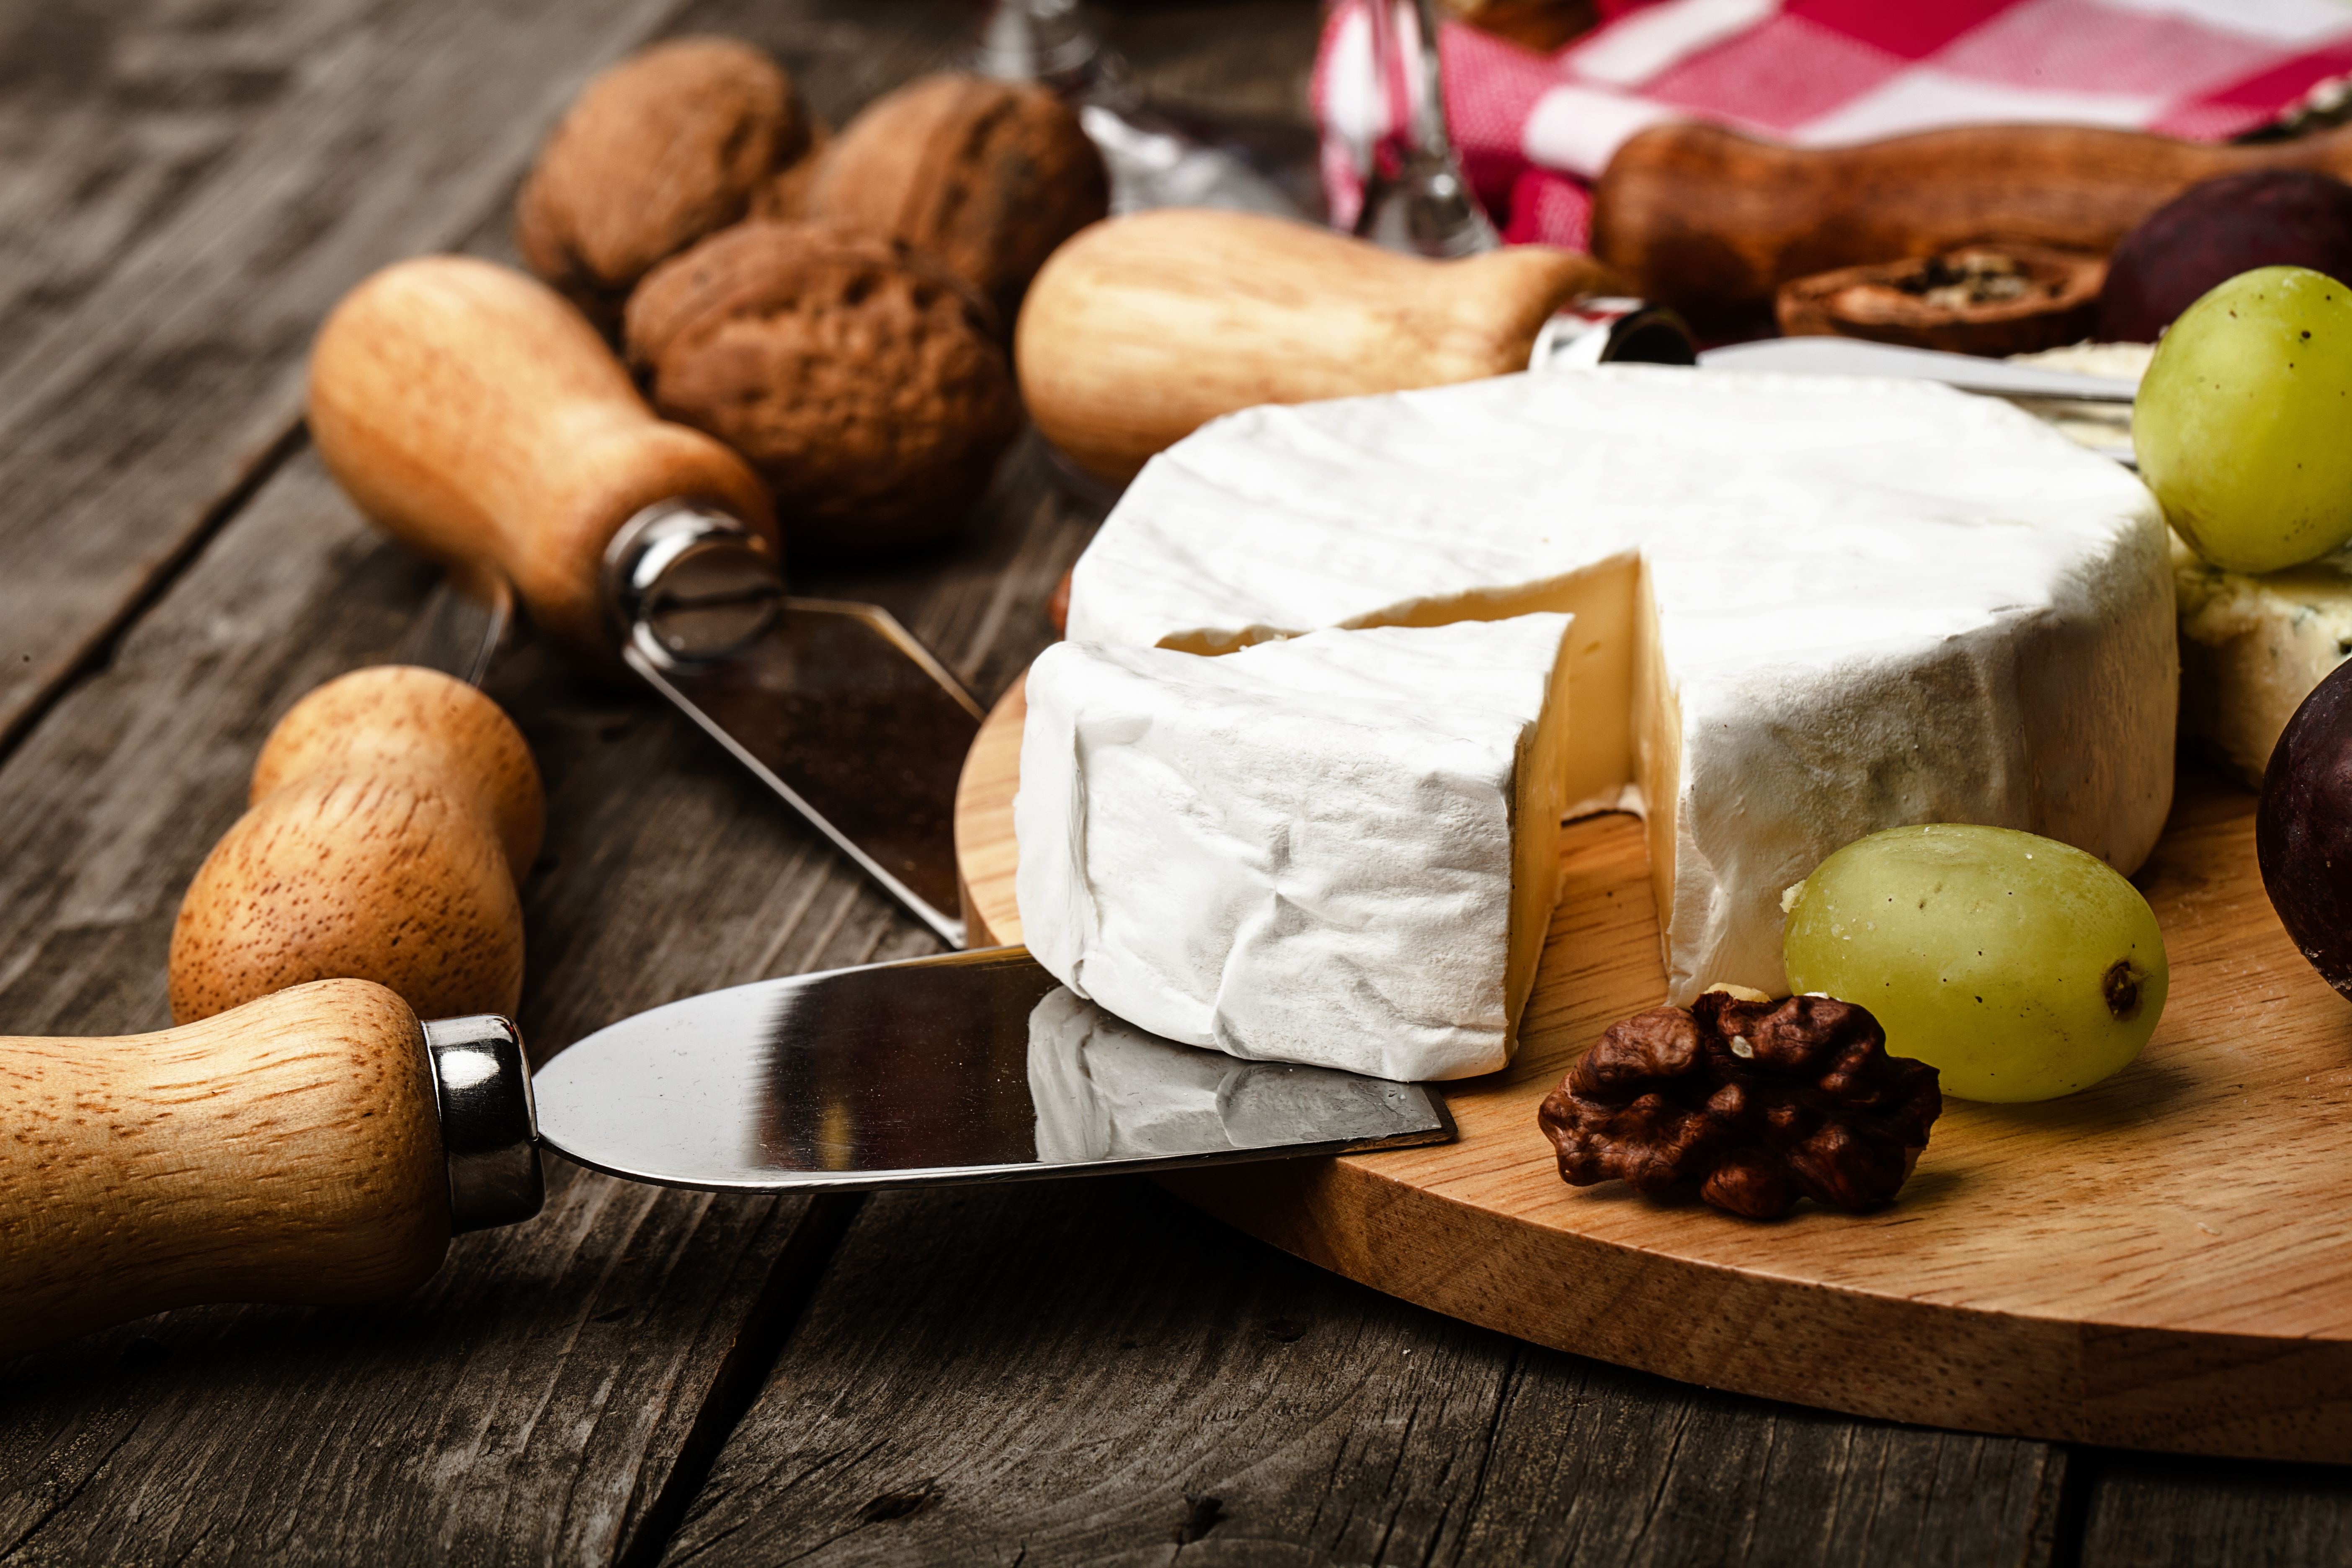 Comment bien découper les fromages ? - Ôdélices